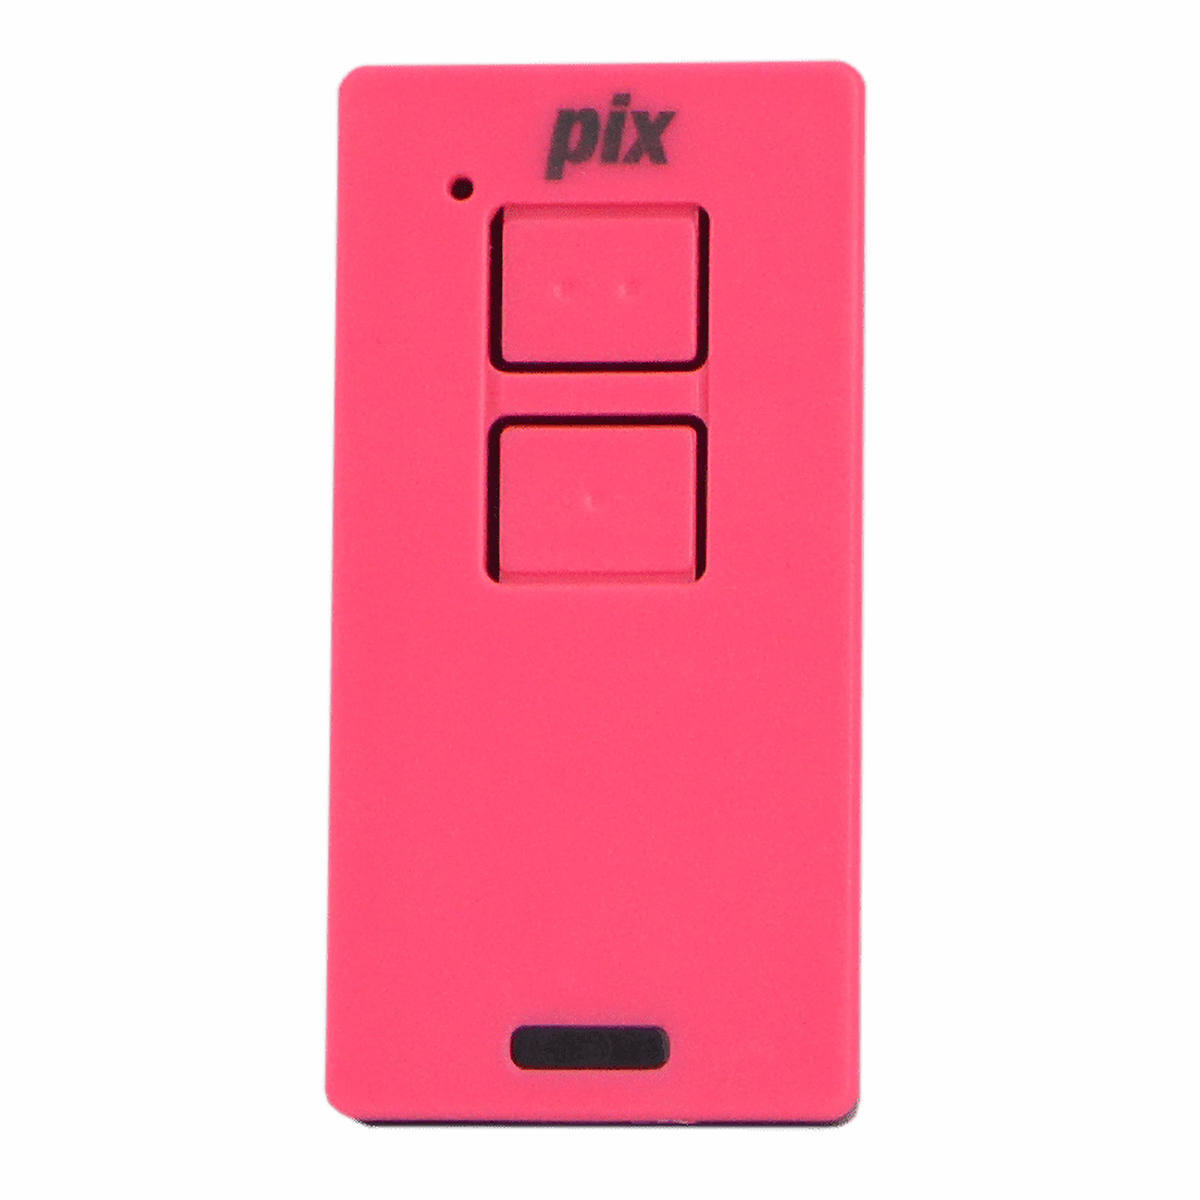 Controle Remoto TX PIX Color 433Mhz com Led Indicador de Acionamento IPEC Rosa